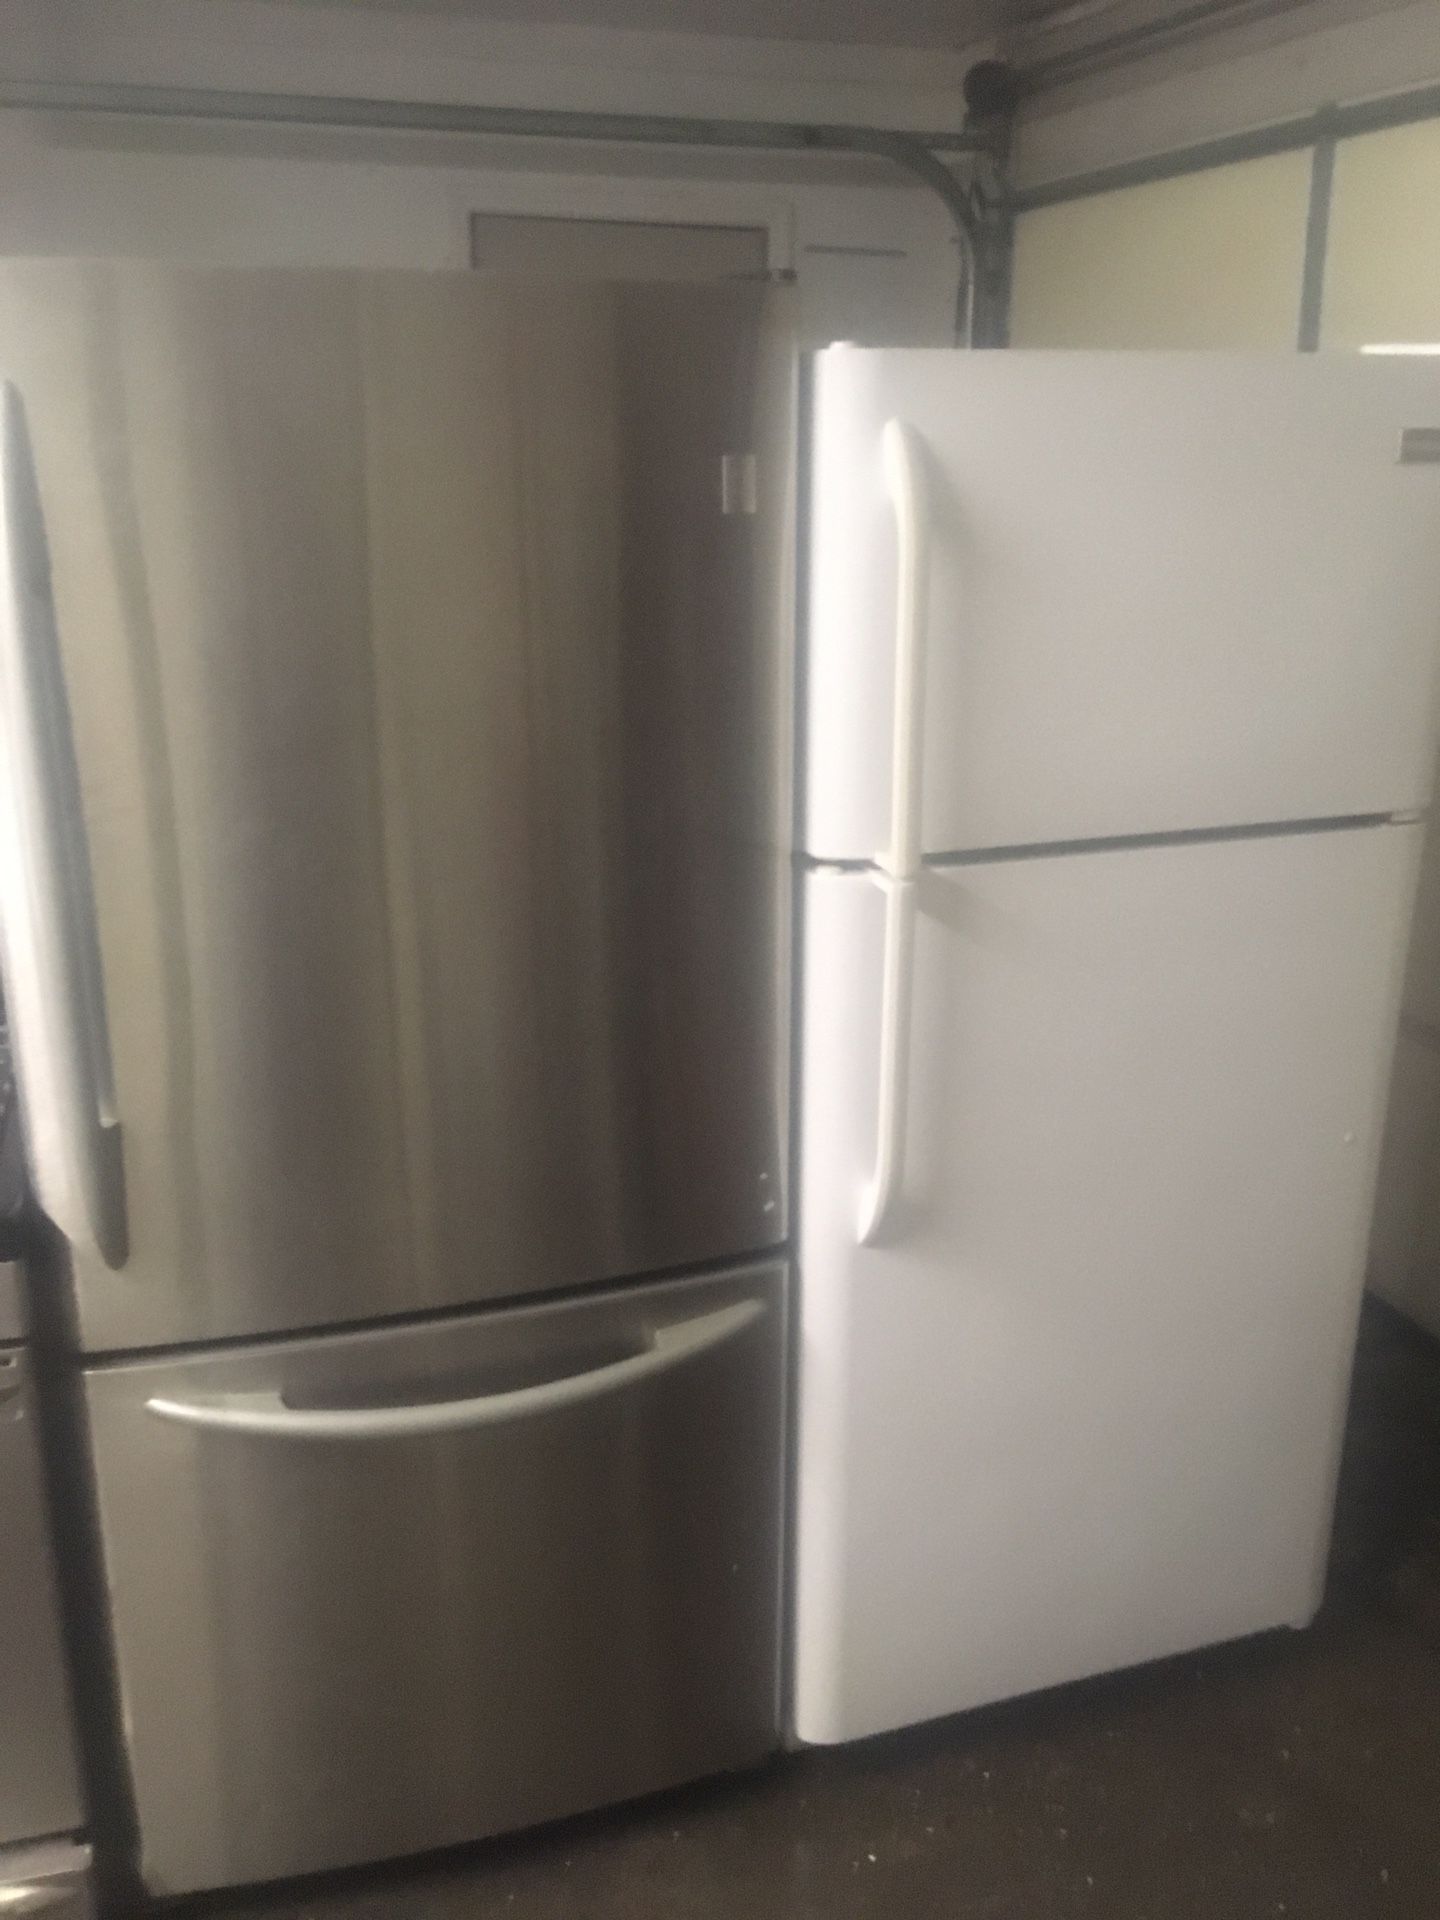 22 cuft stainless steel refrigerator